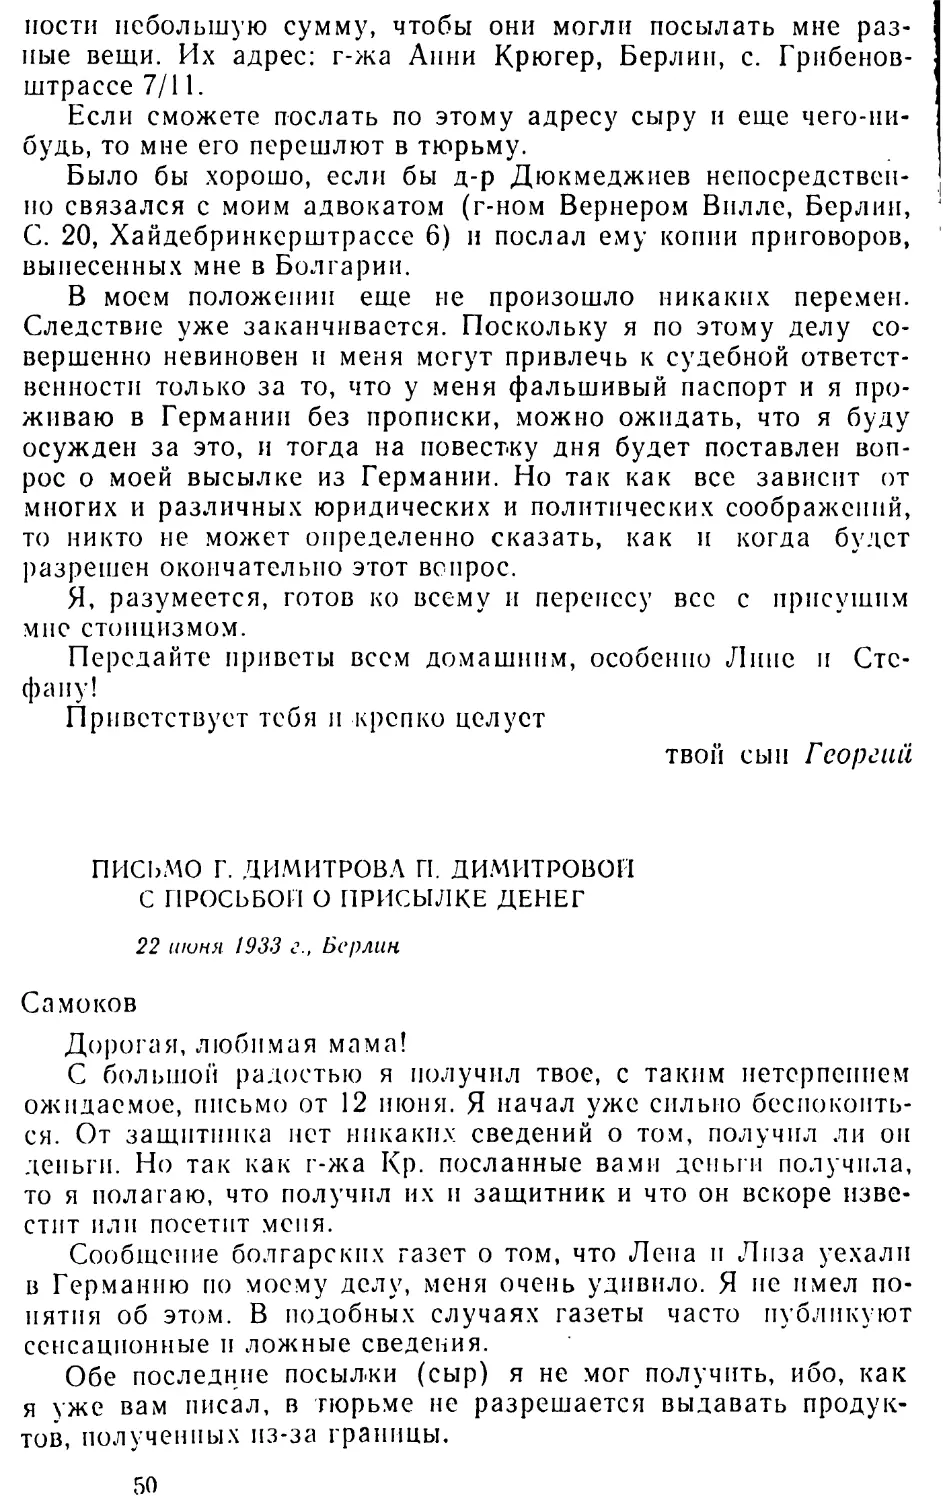 Письмо Г. Димитрова П. Димитровой с просьбой о присылке денег. 22 июня 1933 г